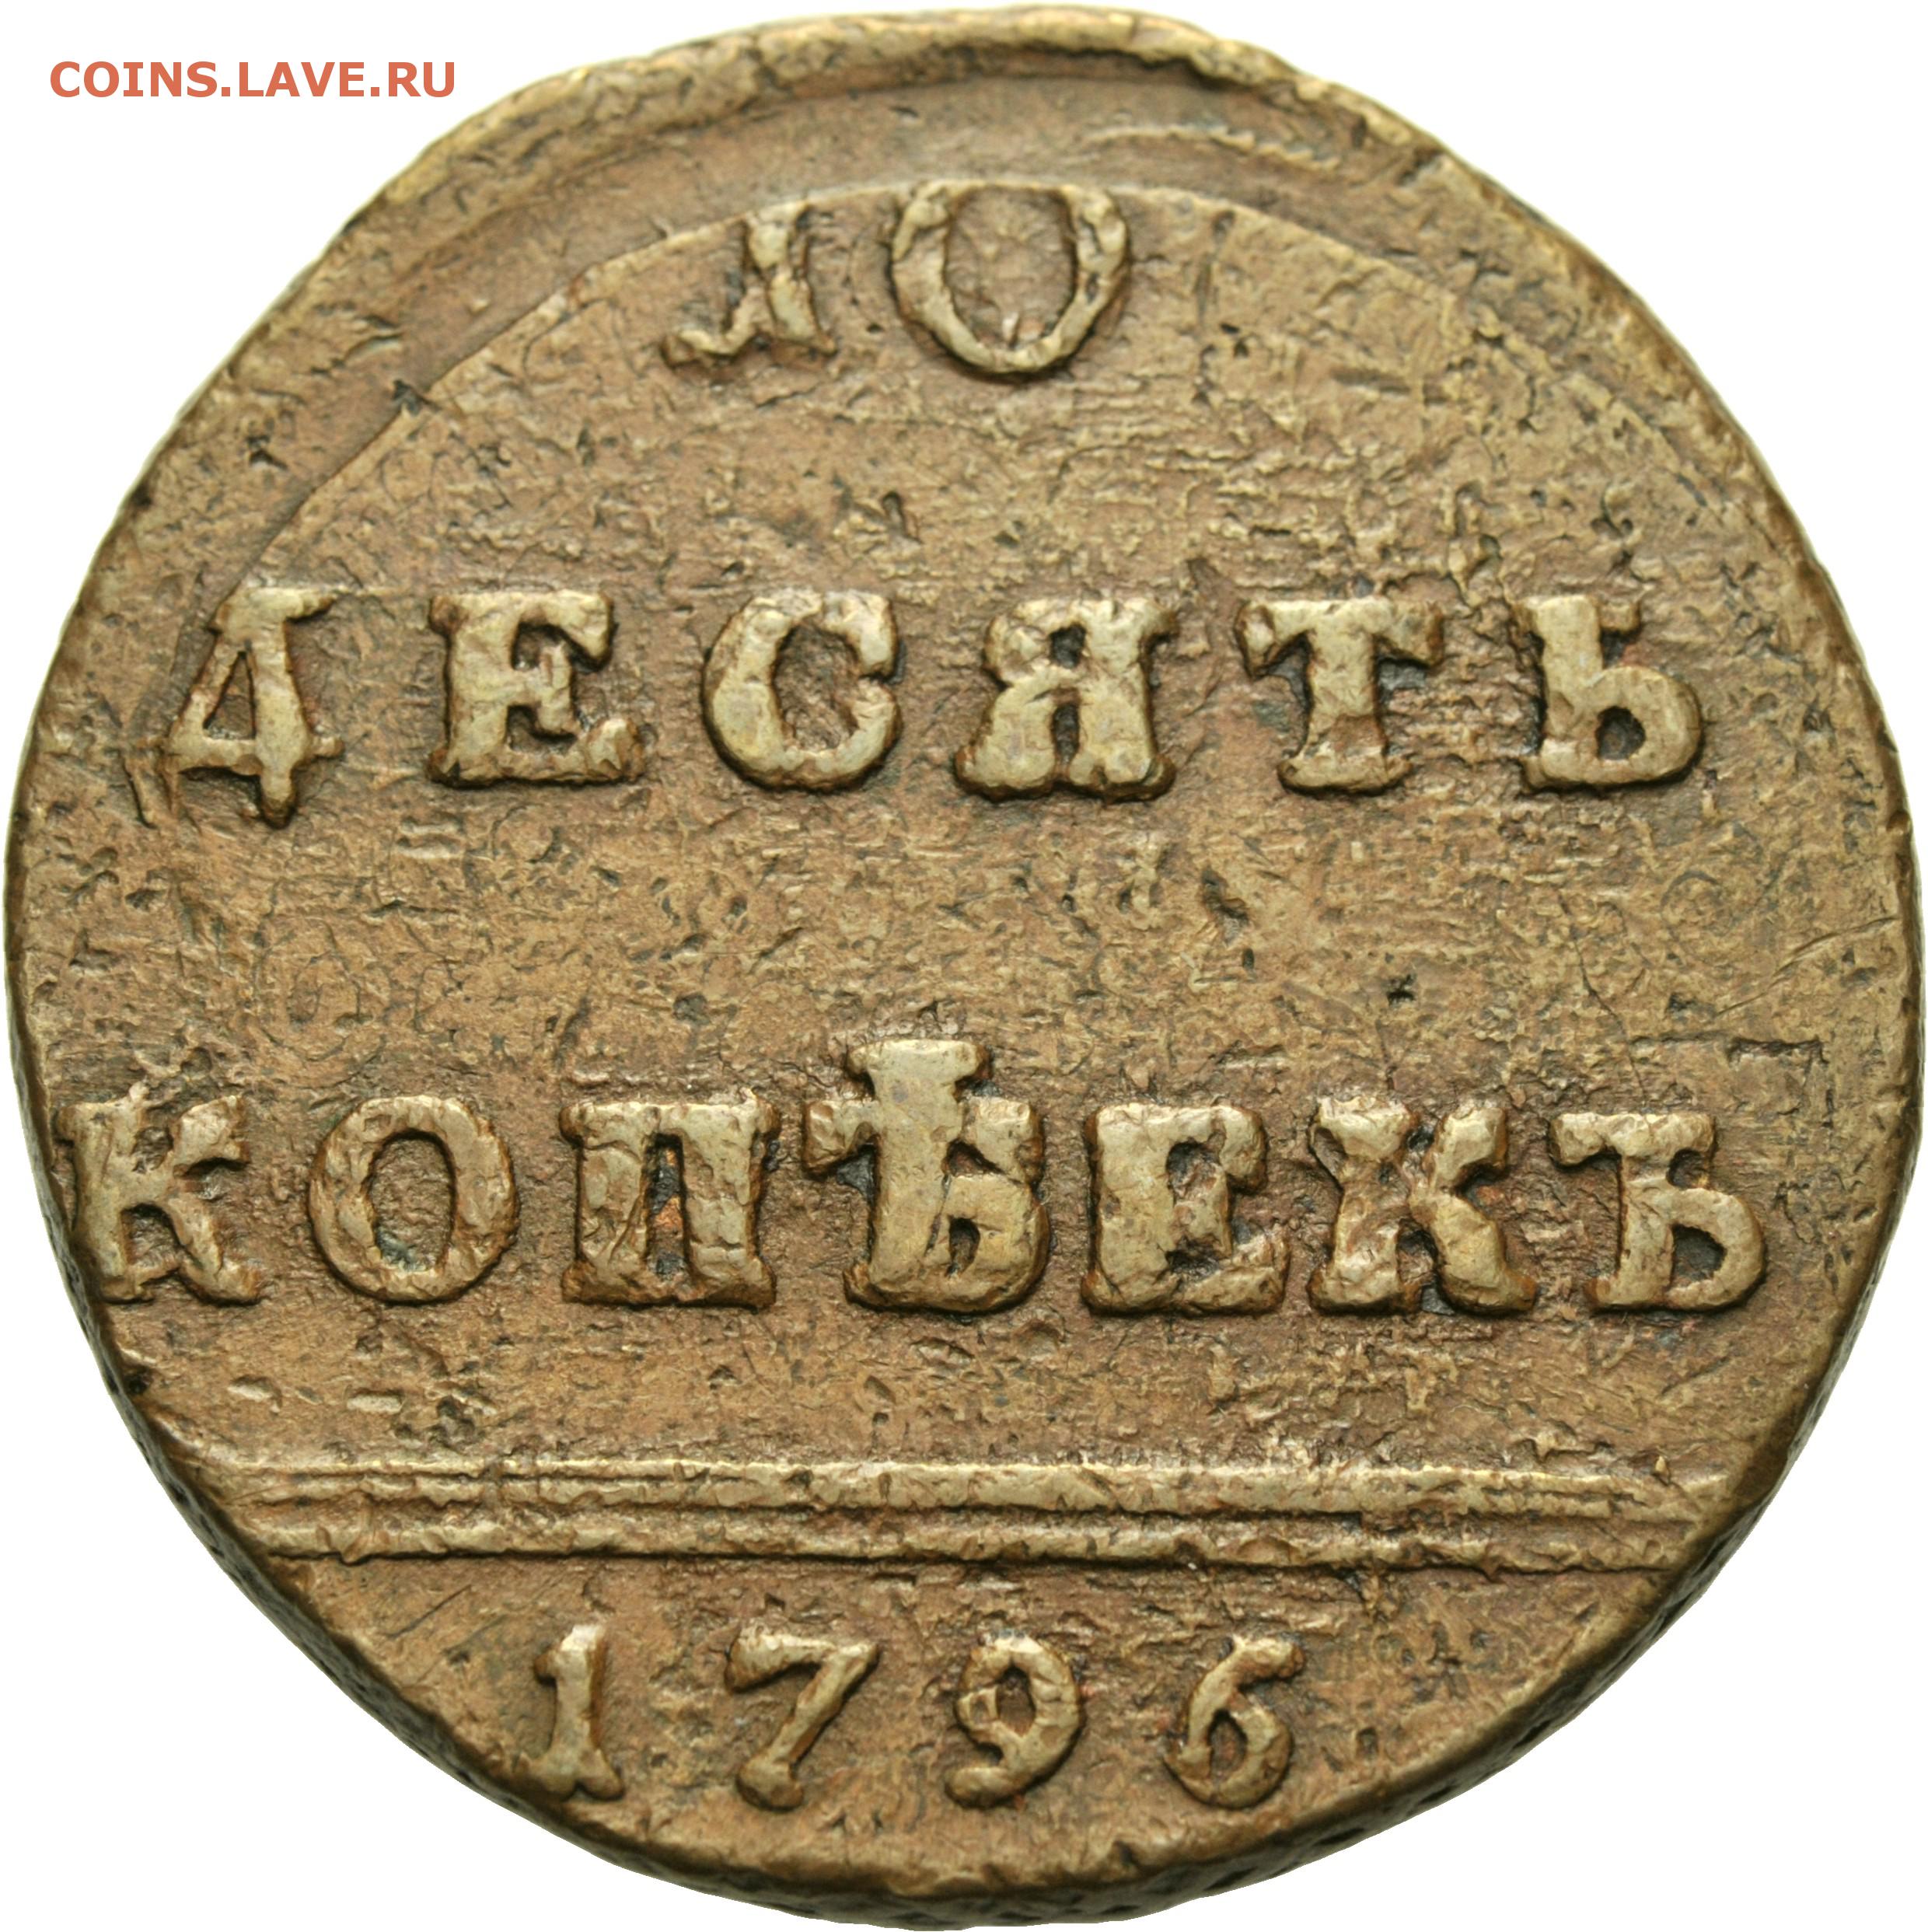 Царские 10 рублей. Монеты 1796 года. Старинные монеты 1796. 10 Копеек 1796.